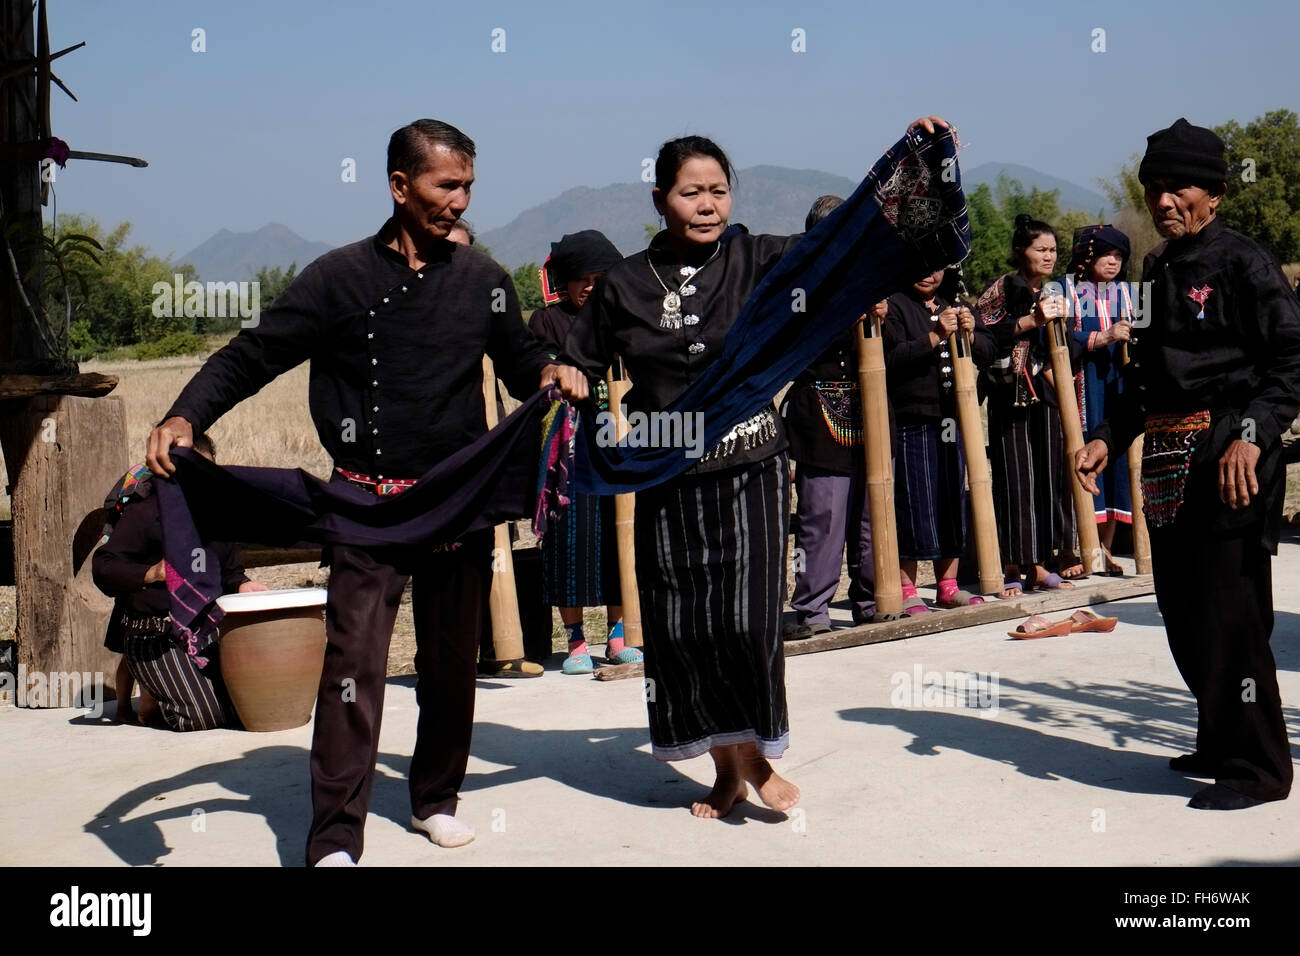 Mitglieder des Tai Dum, die ethnischen Minderheiten angehören, bekannt als "das Volk ohne Land", dessen Vorfahren aus Laos im Jahre 1905 das Tragen von typischen schwarzen Kleid tanzen traditioneller Tanz in Tai Dam Dorf Ban Napanard in Ban Na Pa Nat, Tambon Khao Kaeo im nördlichen Teil der Provinz Loei Thailand gelegen hatte migriert Stockfoto